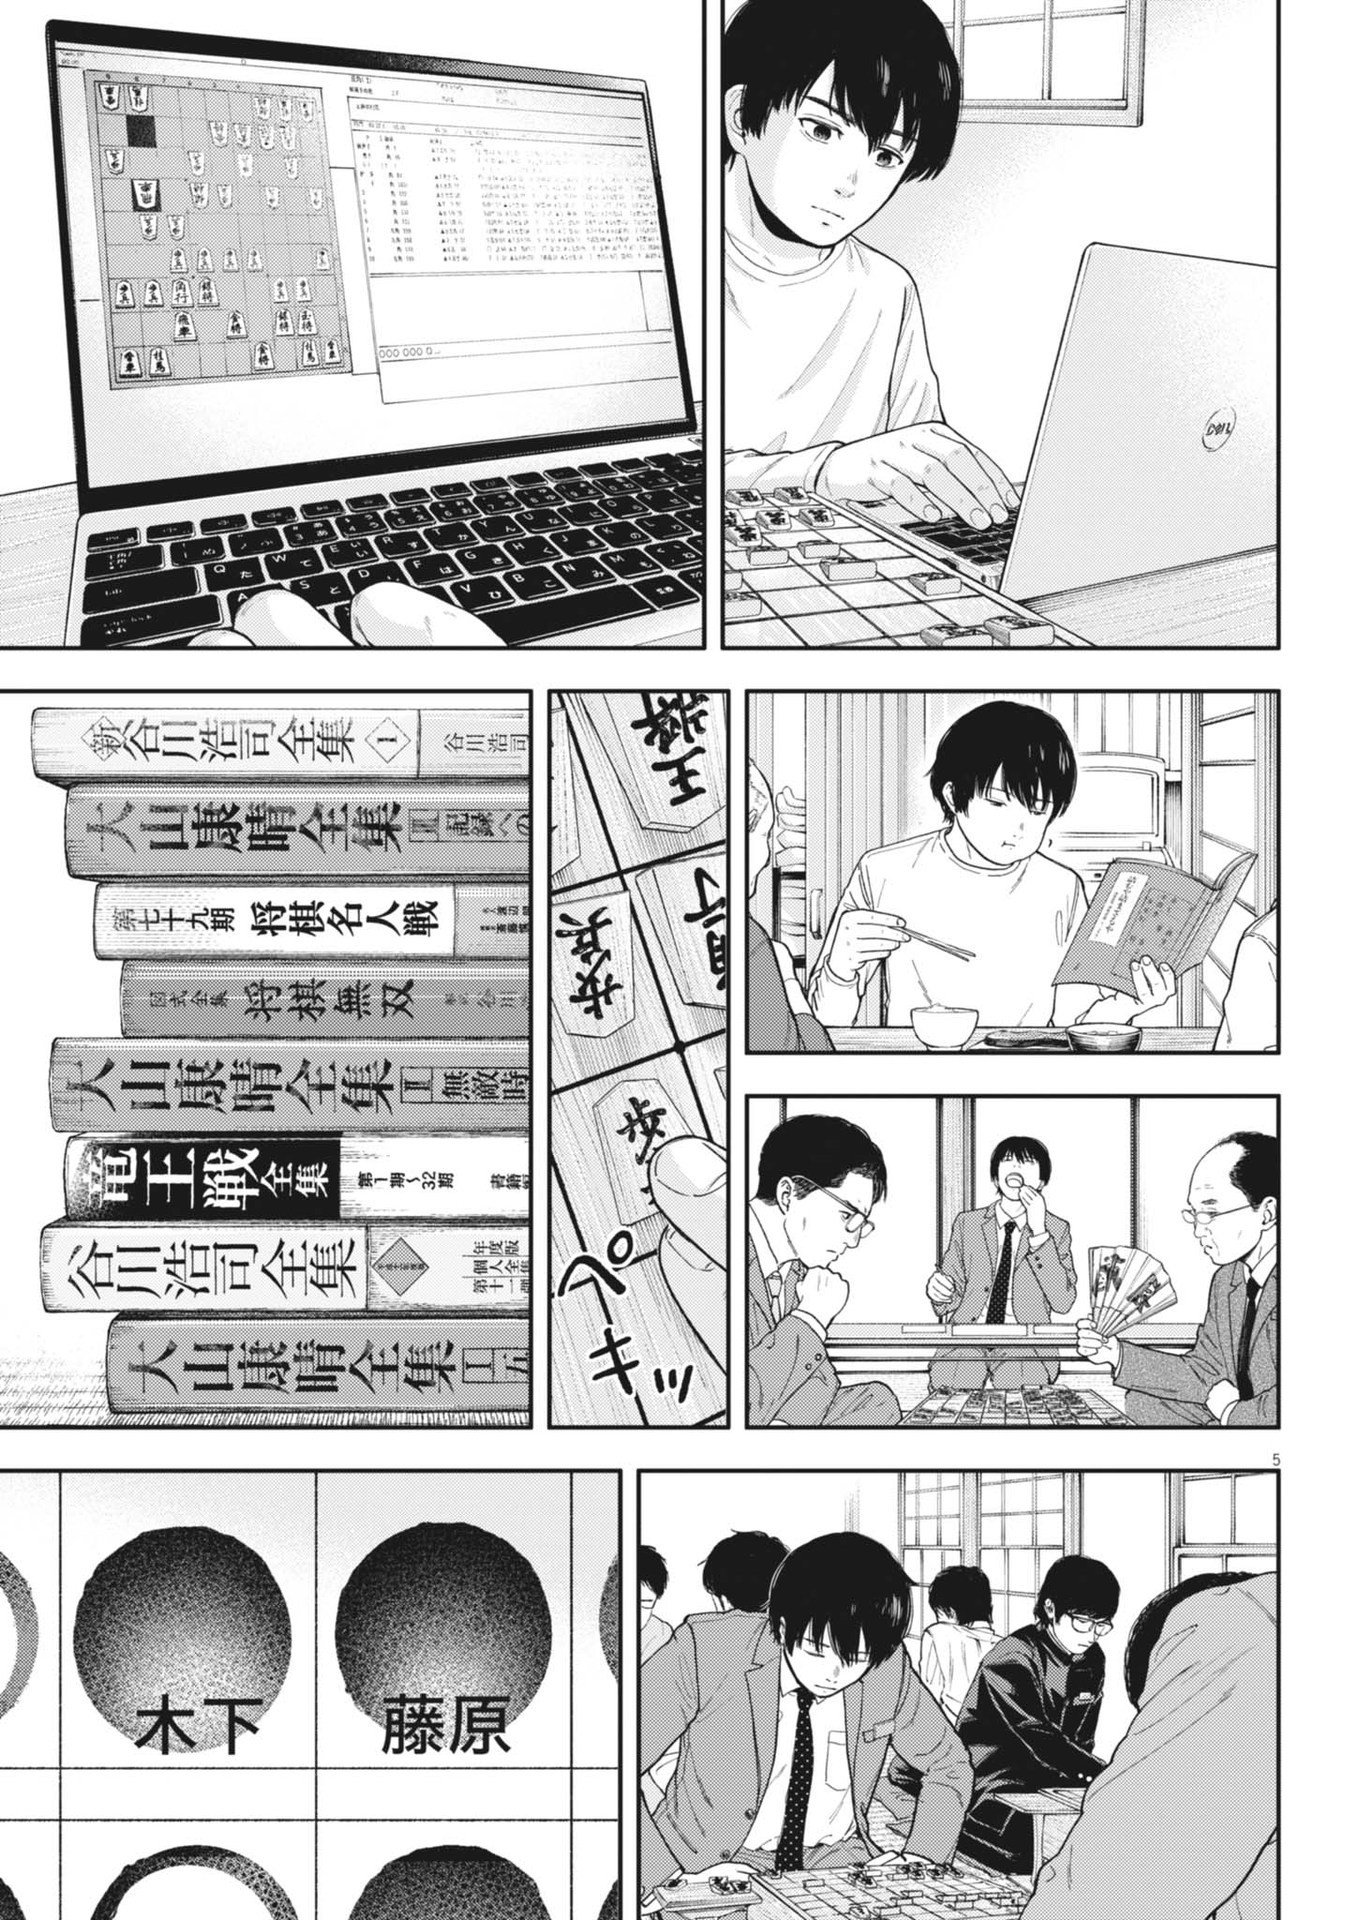 Yumenashi-sensei no Shinroshidou - Chapter 31 - Page 5